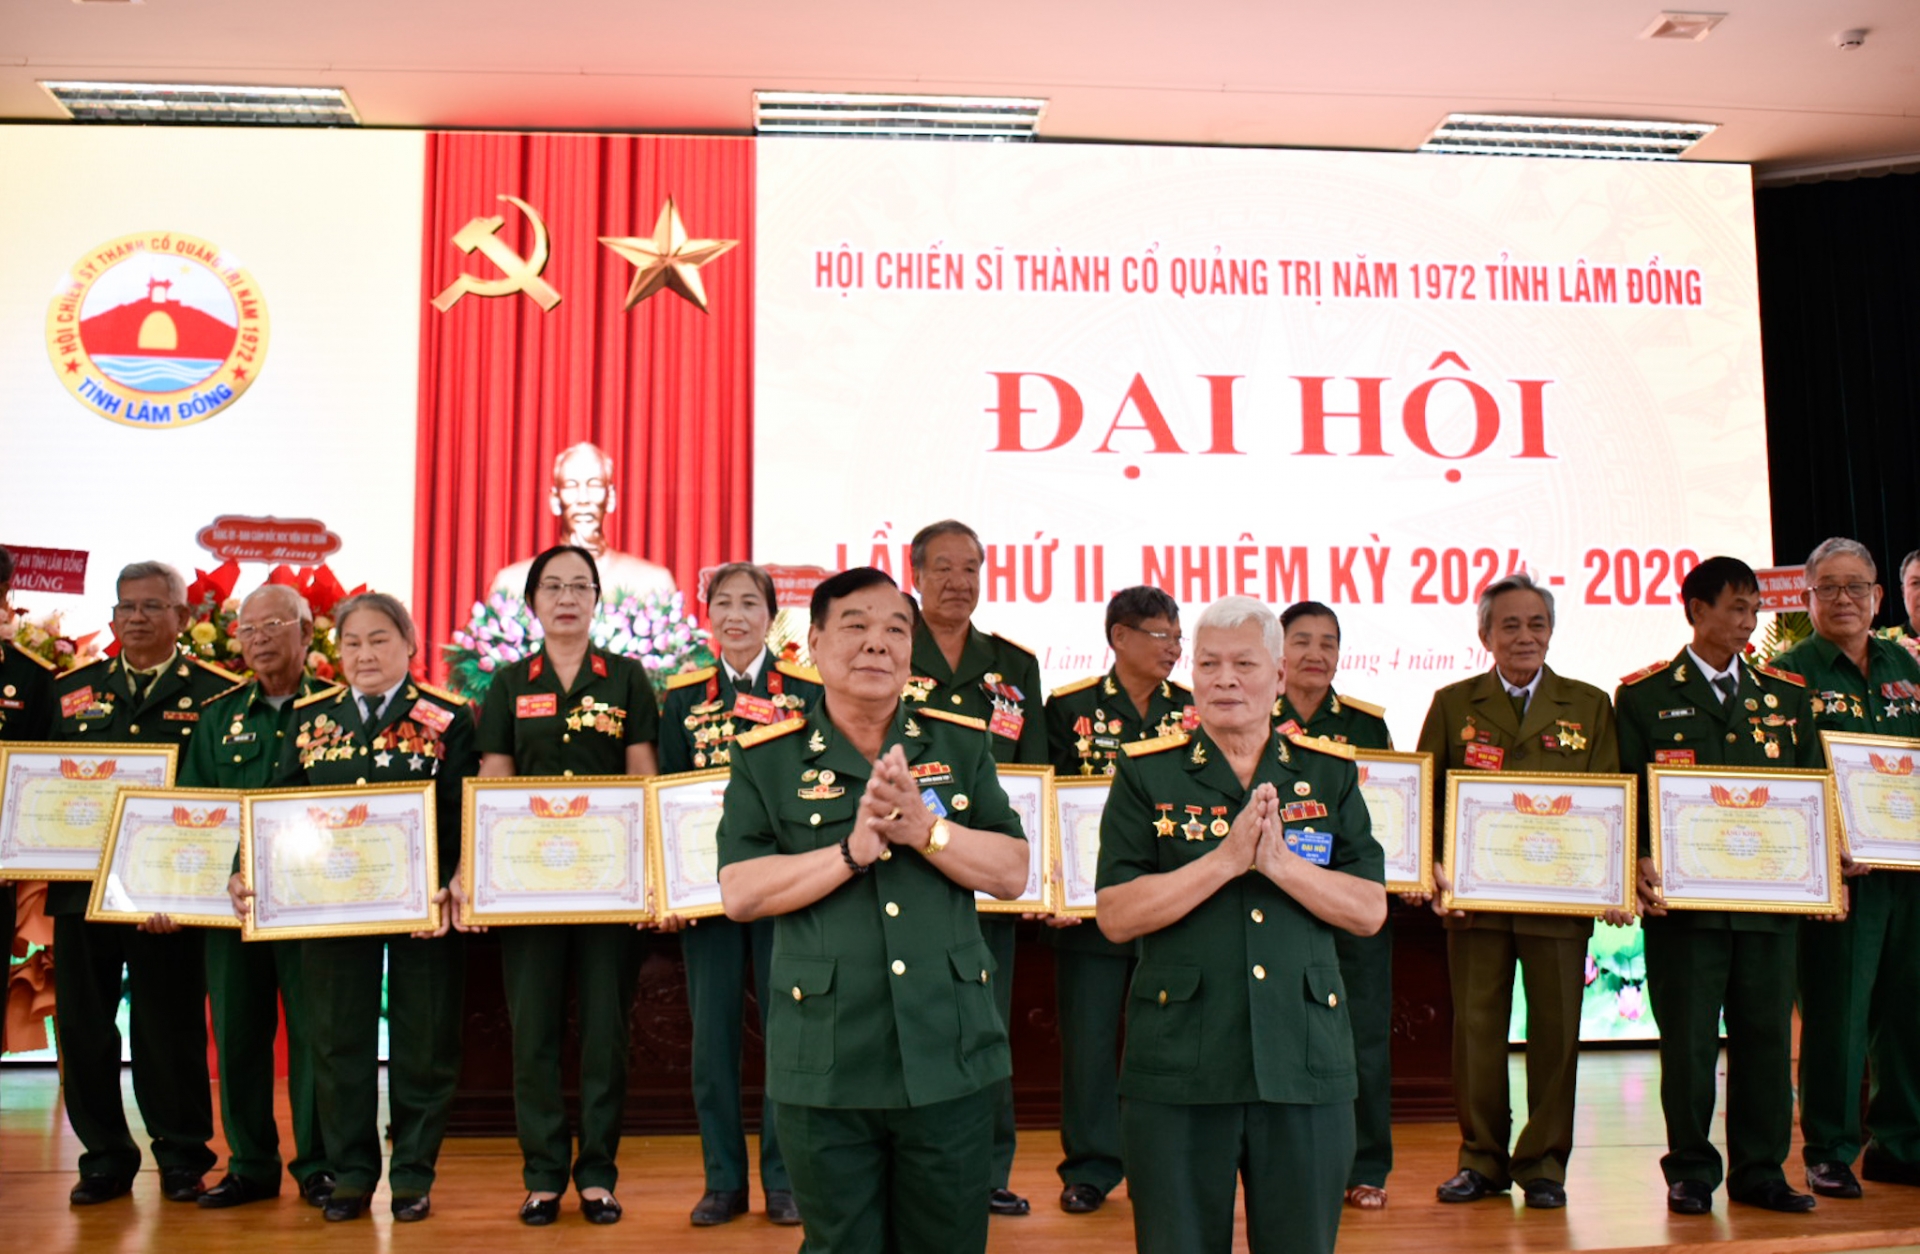 Đại hội đại biểu Hội Chiến sĩ Thành cổ Quảng Trị năm 1972 tỉnh Lâm Đồng lần thứ II, nhiệm kỳ 2024 - 2029